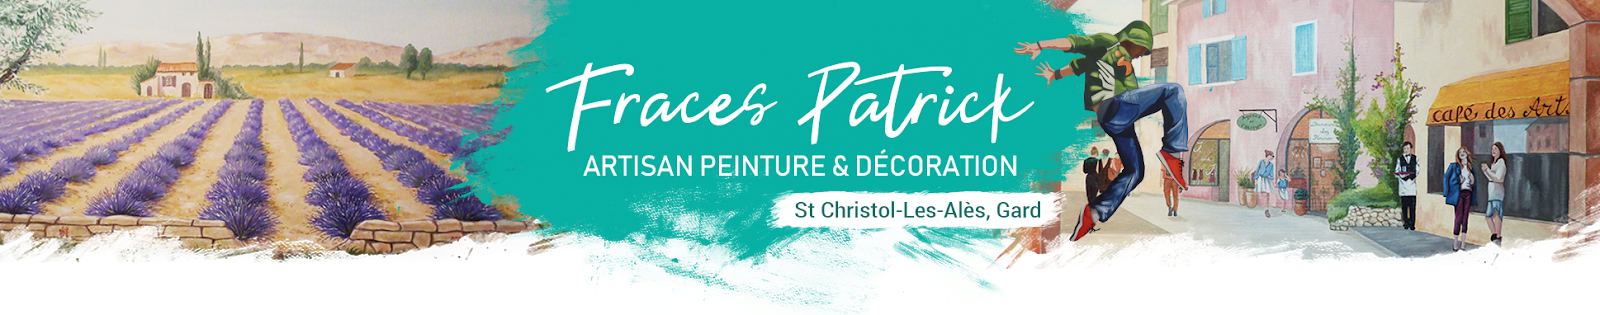 FRACES Patrick artisan peinture et décoration St Christol-les-alès (GARD) 